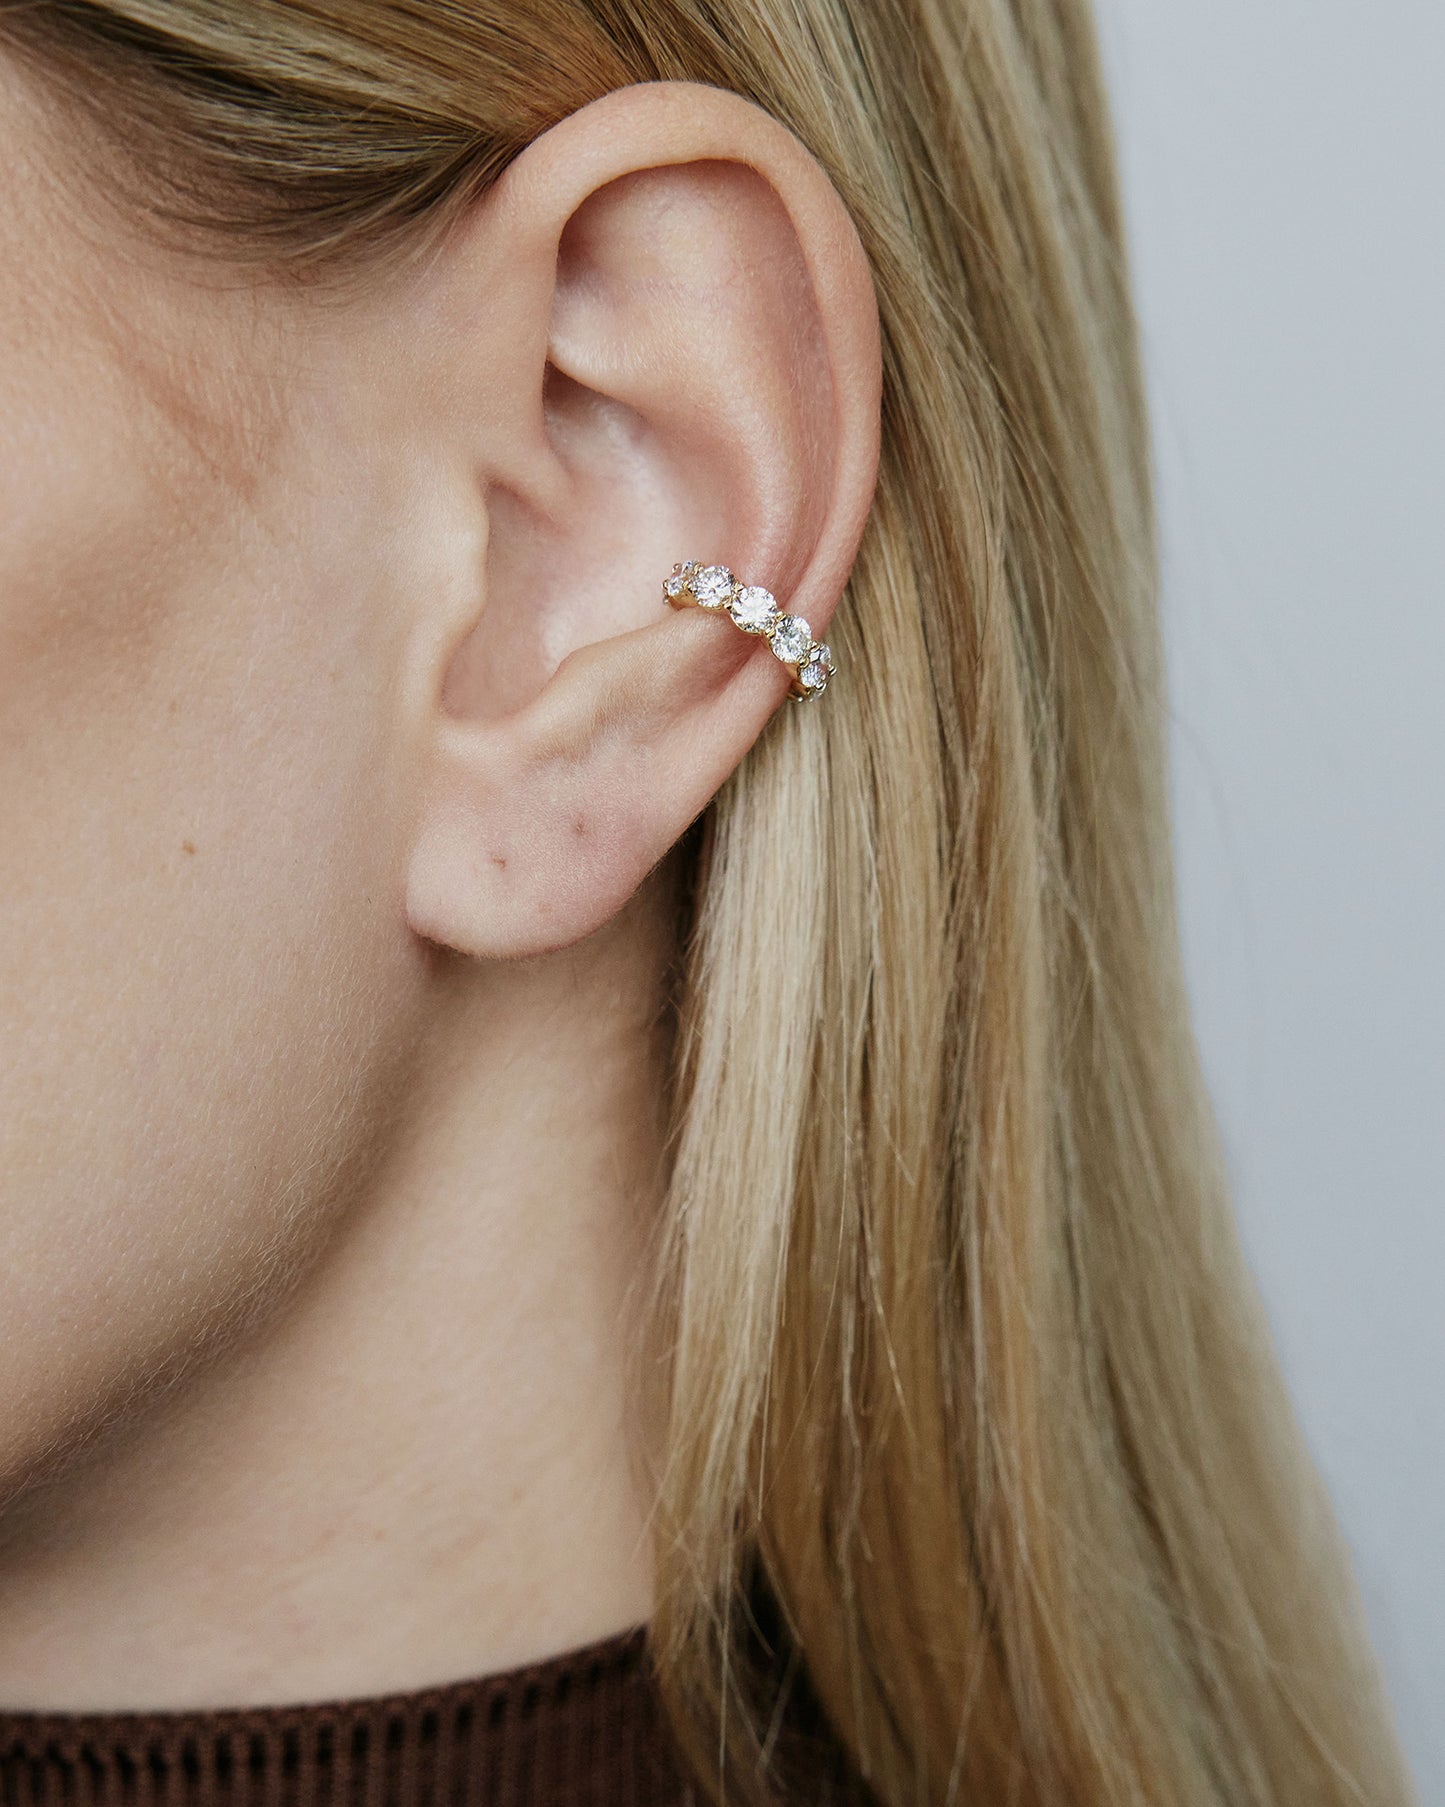 Image of diamond ear cuff on model's ear.